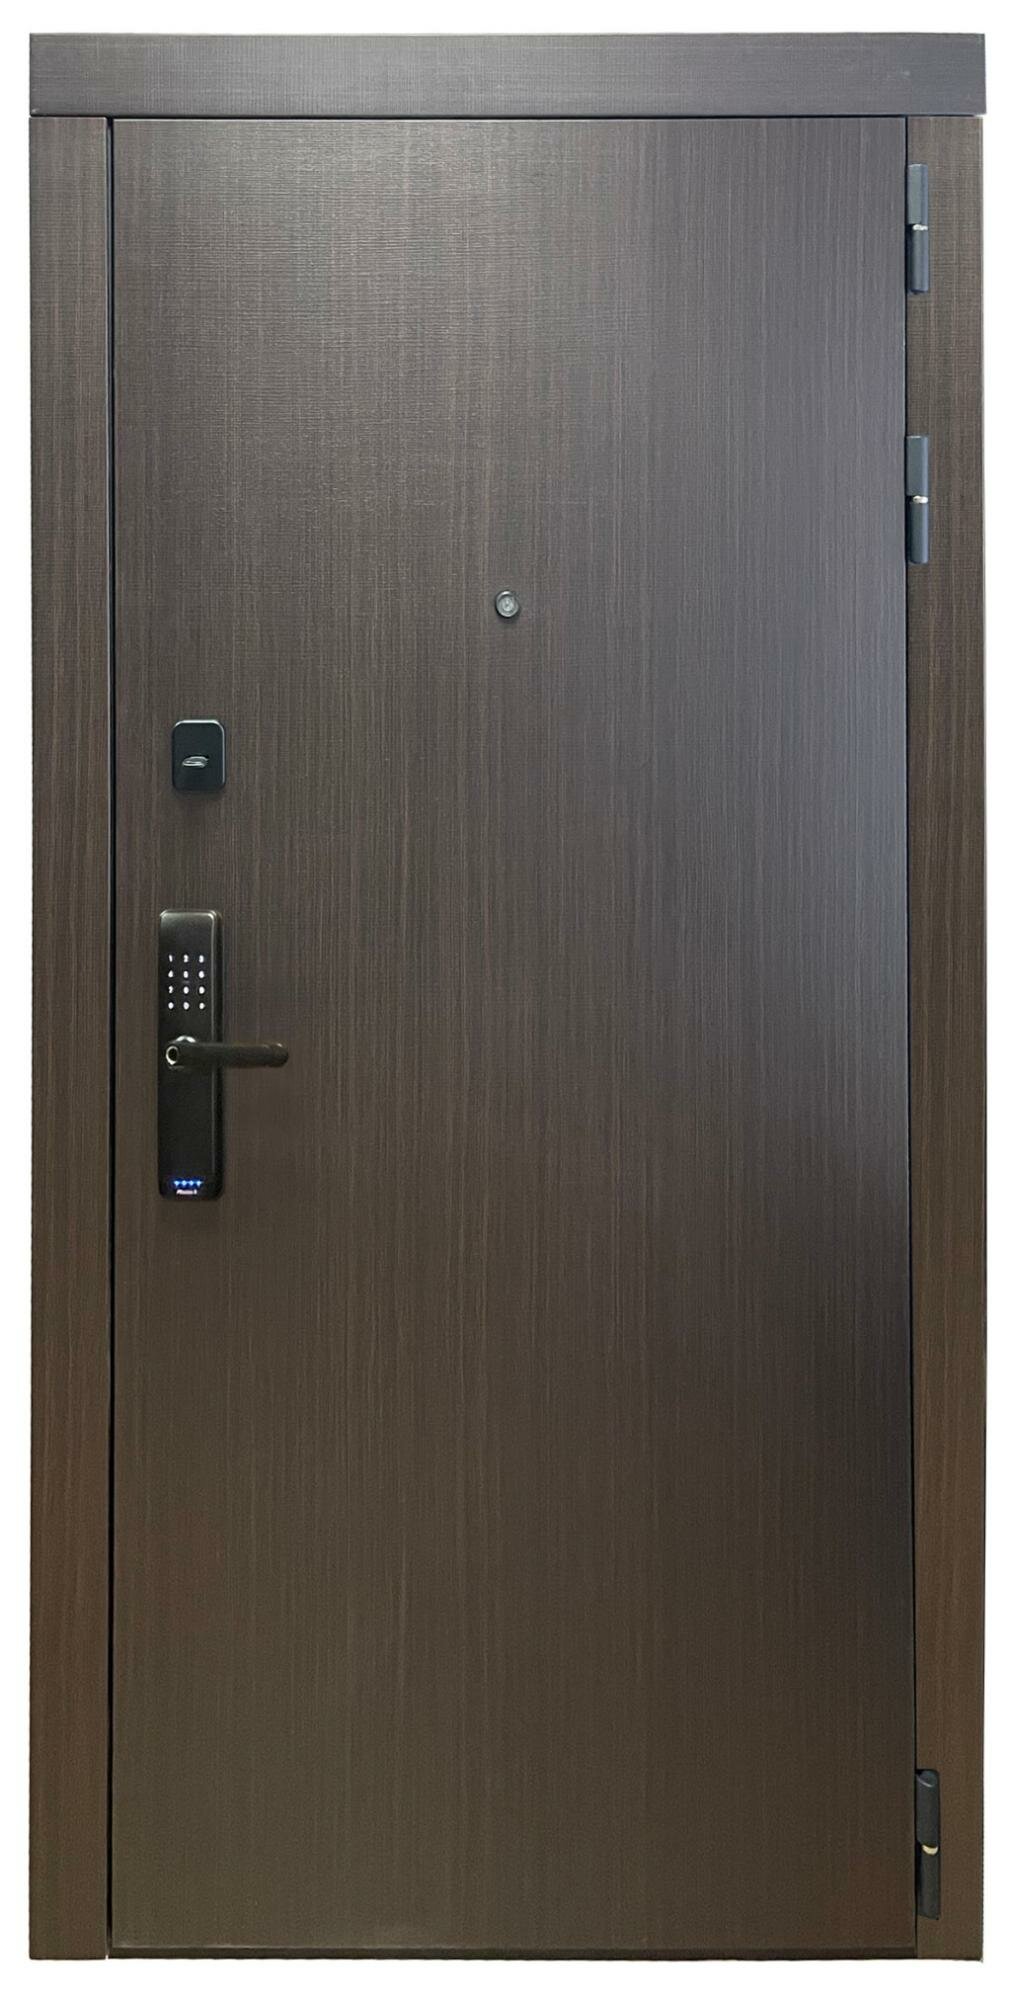 Электронные замки на двери баяр Входная дверь с отпечатком пальца баяр 715 Правая - фотография № 1